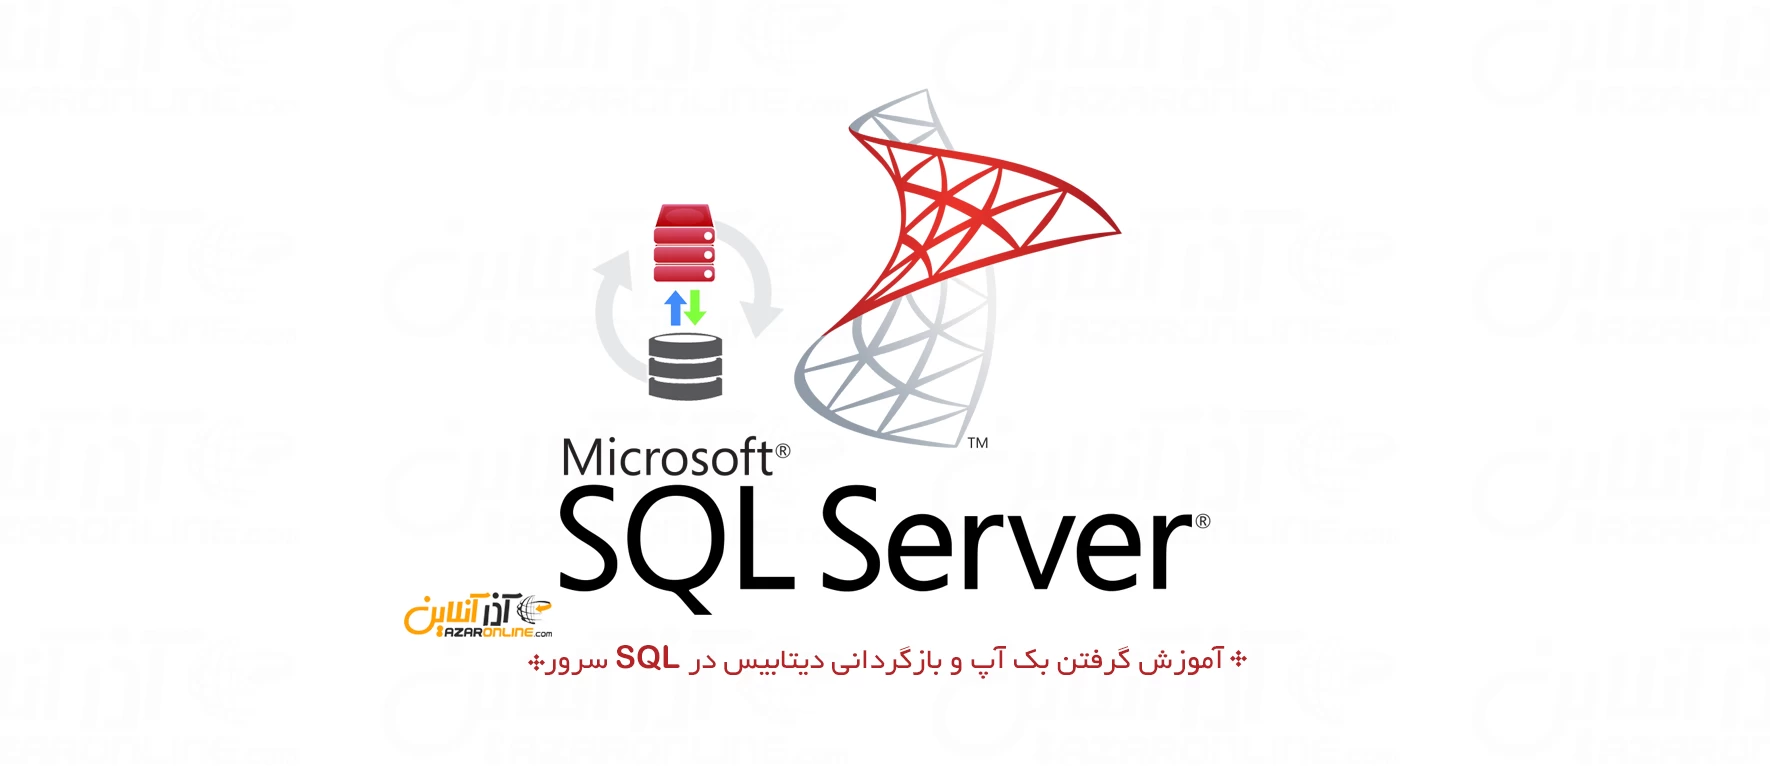 آموزش گرفتن بک آپ و بازگردانی دیتابیس در SQL سرور